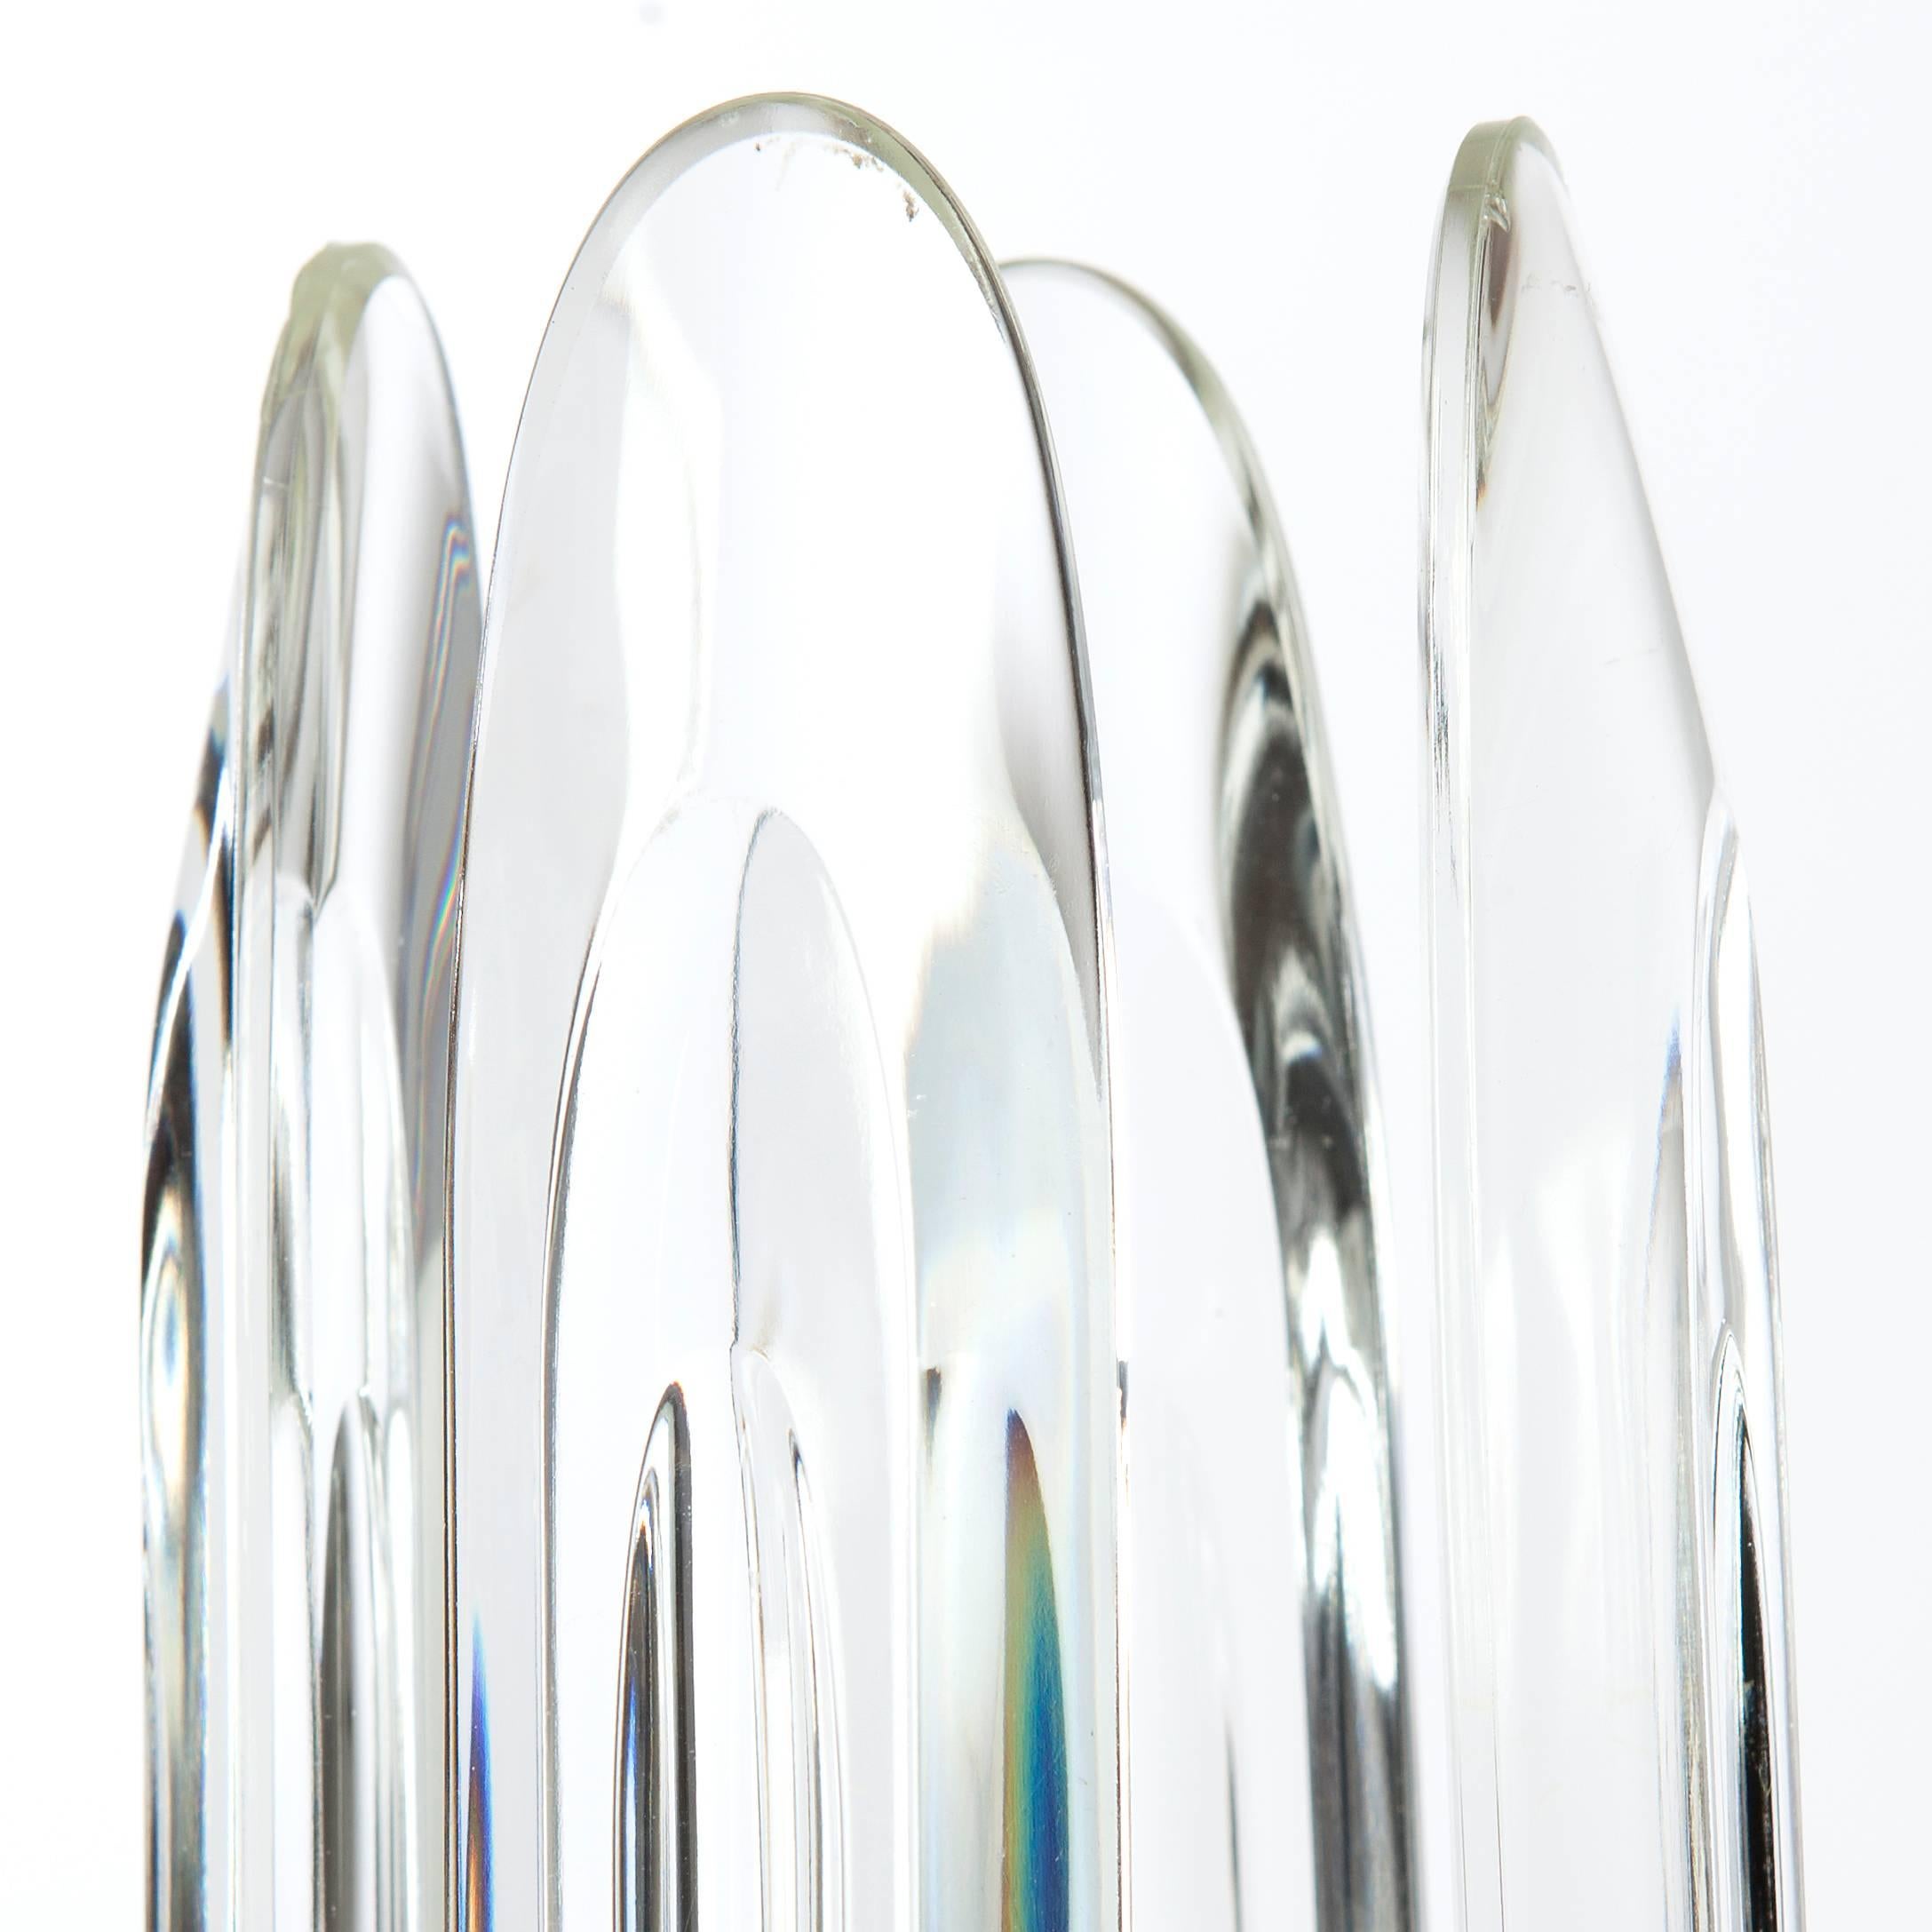 Drei glamouröse Tischlampen von Gaetano Sciolari. Sein charakteristisches Design mit abgeschrägten Kristallen, die von ihren Messingfassungen herabhängen.
Bitte beachten Sie, dass wir drei auf Lager haben. Der Preis gilt für ein Paar.
Wir haben